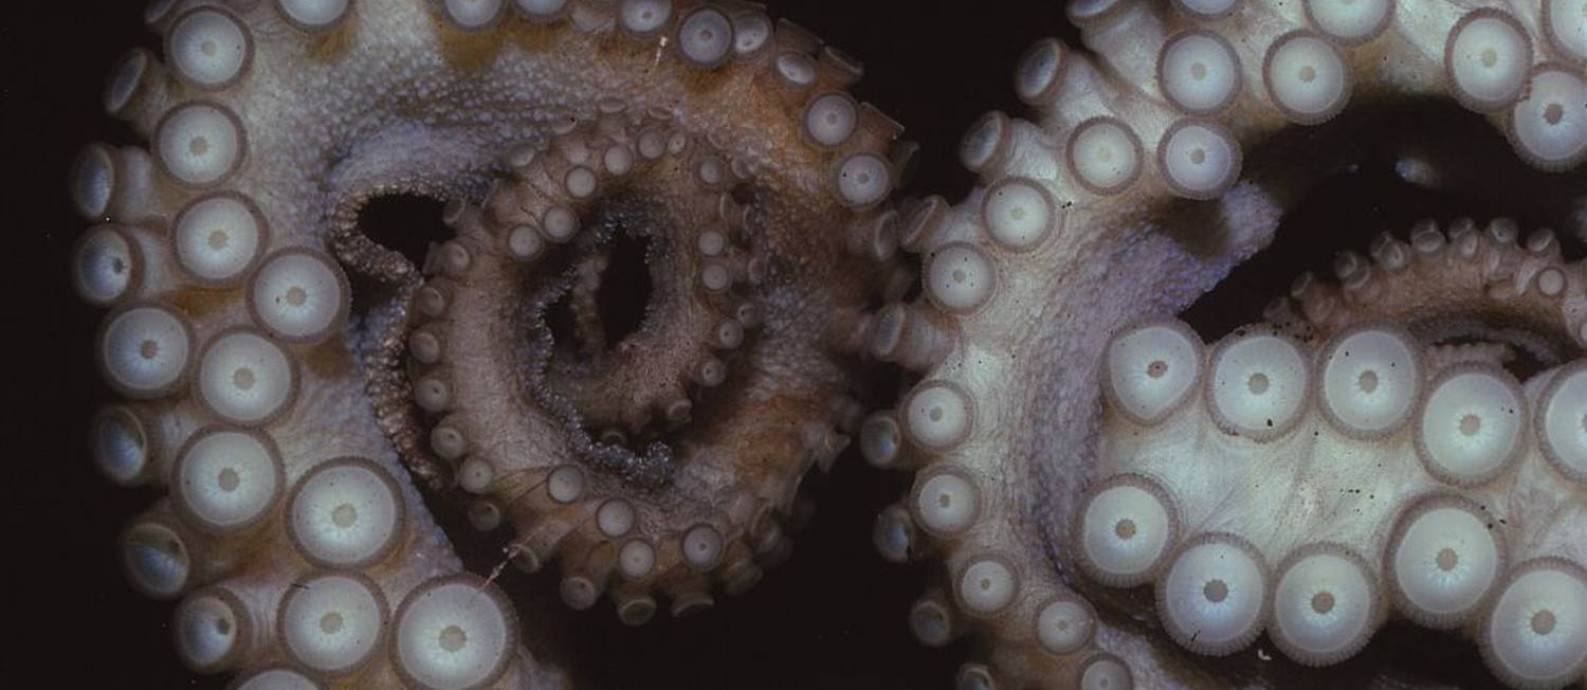 Os tentáculos dos polvos são altamente desenvolvidos sensorialmente Foto: Heritage Images / Getty Images